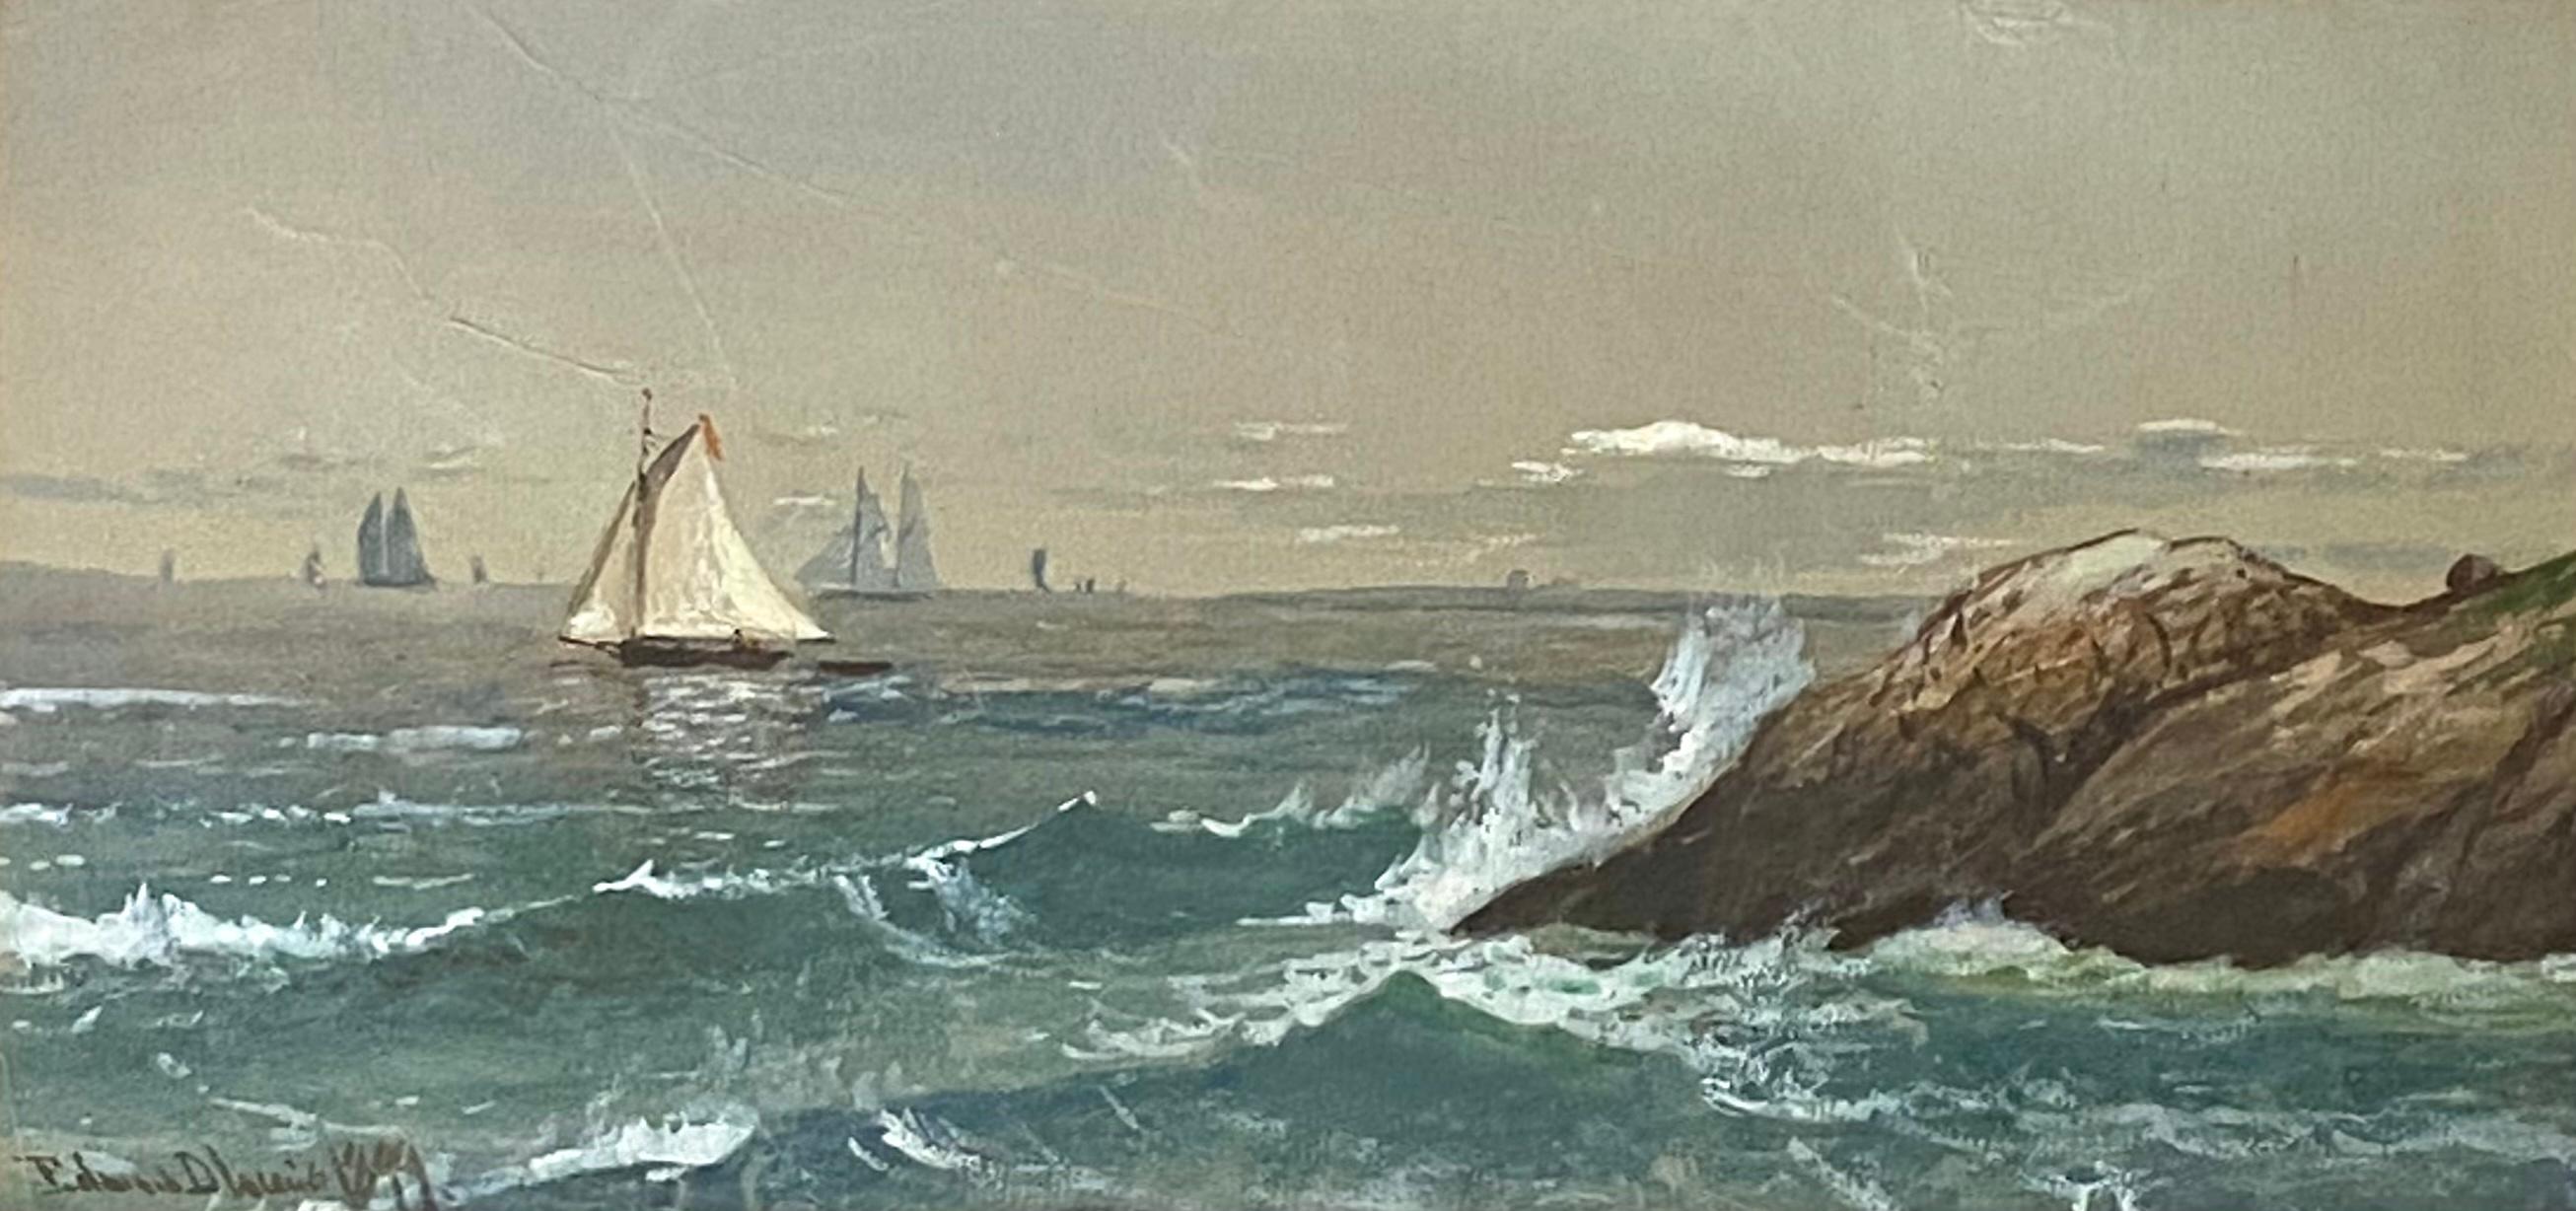 Edmund Darch Lewis Landscape Art - “Sailing along the Coast”